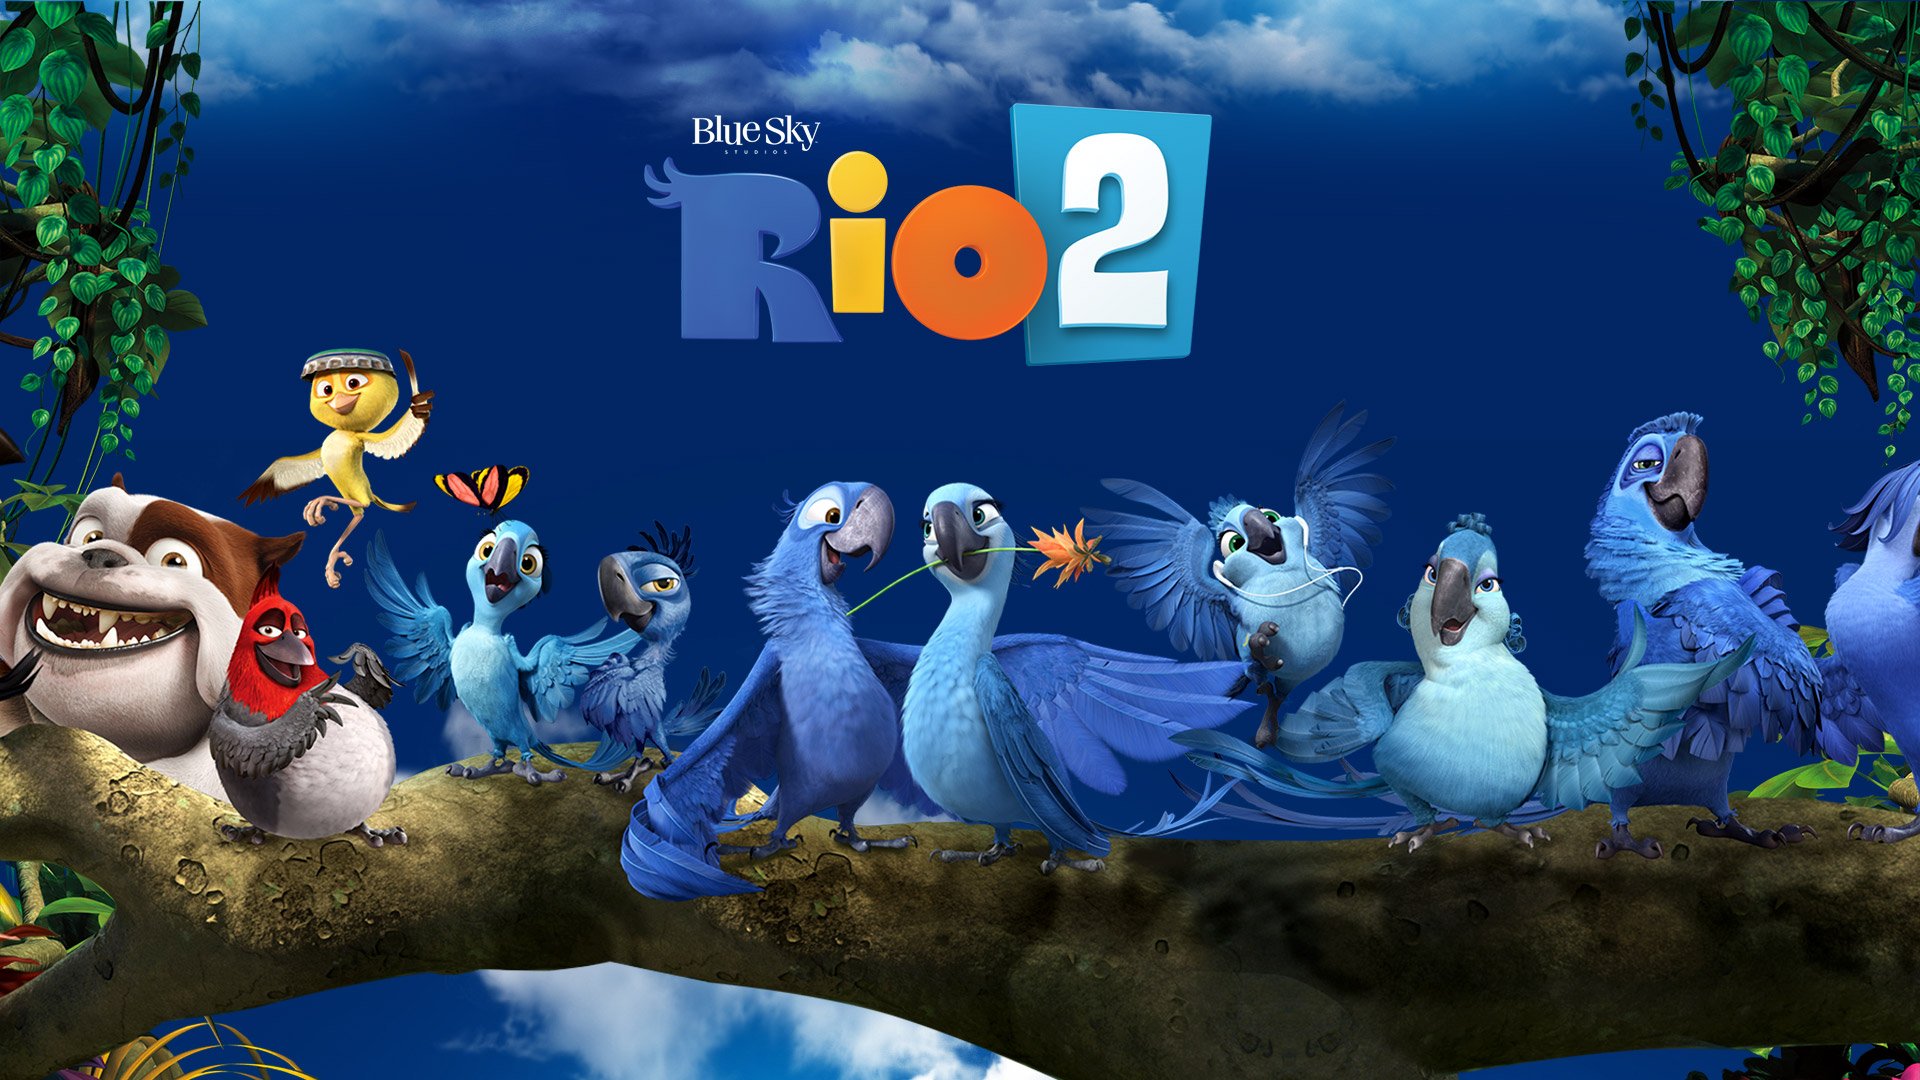 Rio 2 (2014) Movie HD Wallpapers & Facebook Cover Photos